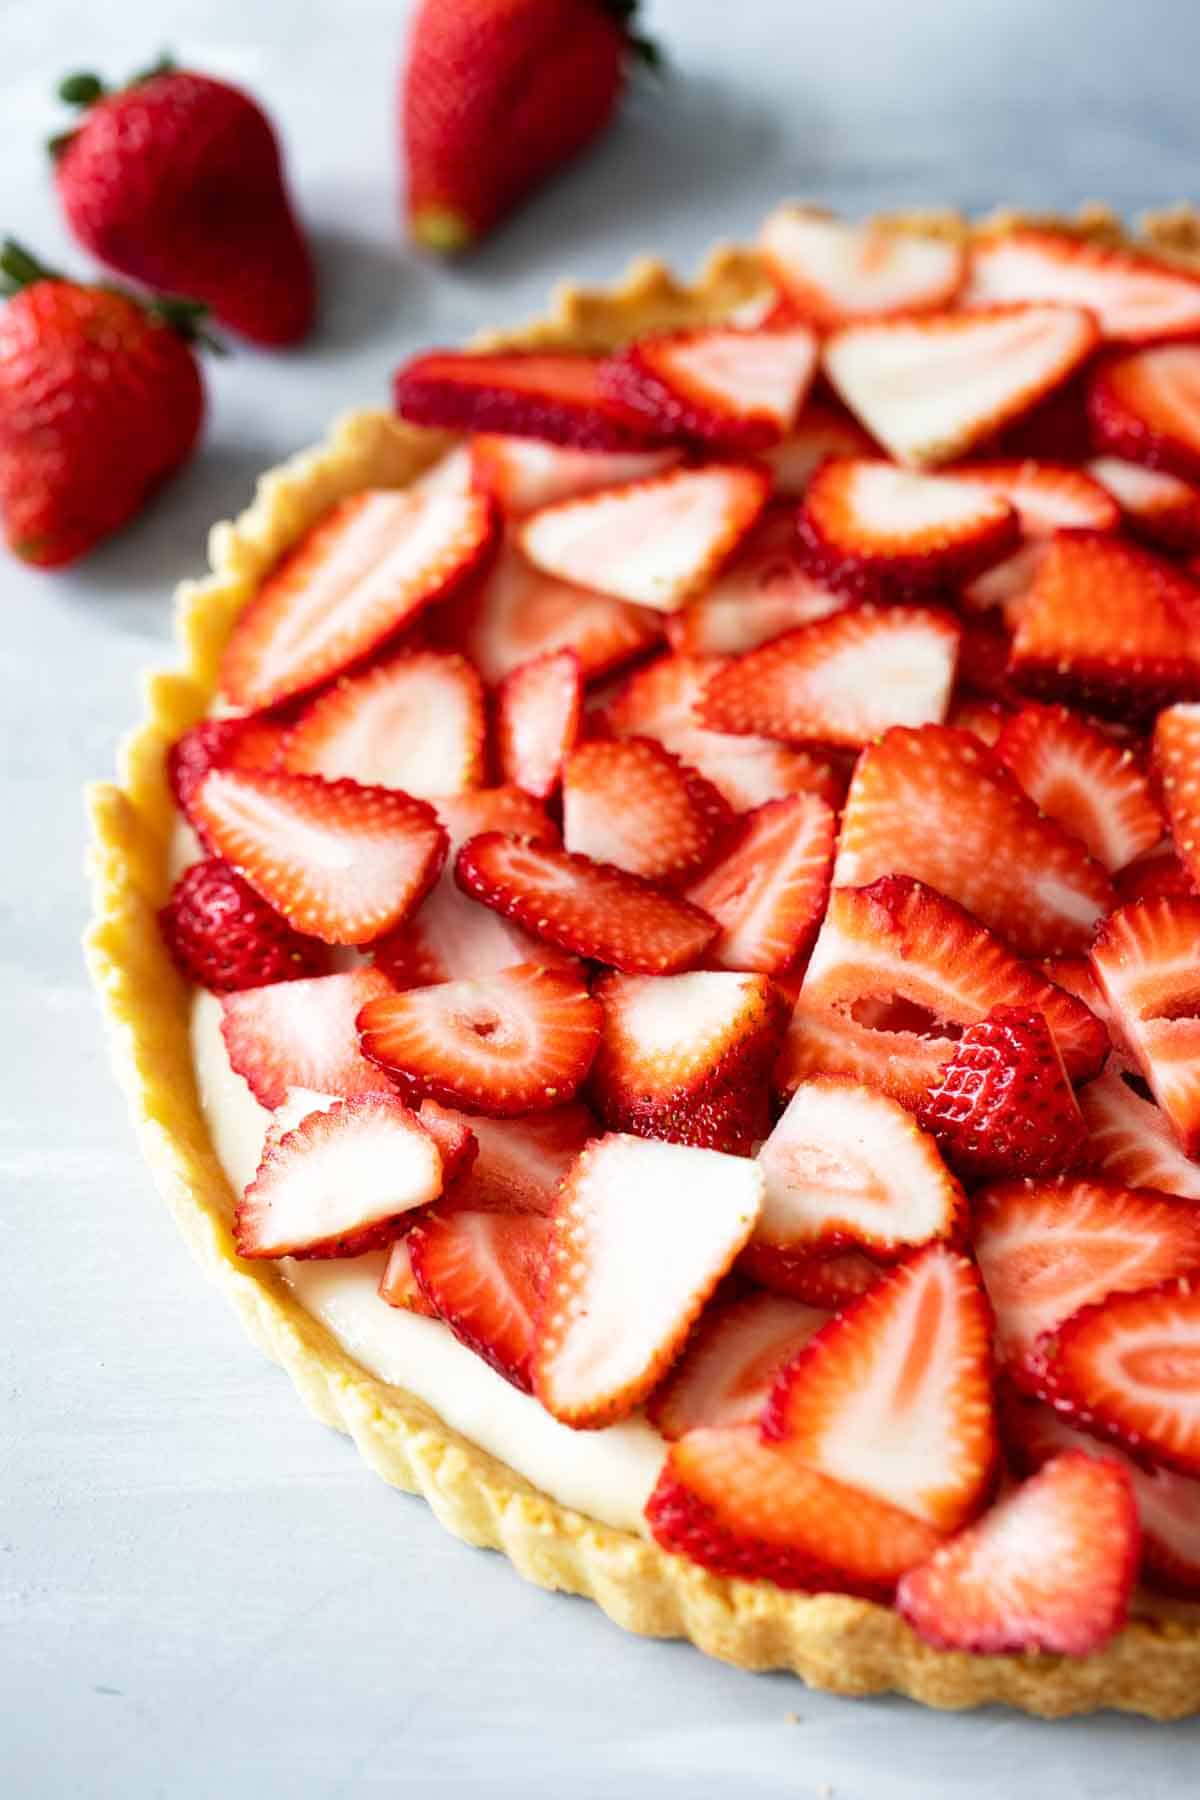 Strawberry tart made with fresh strawberries